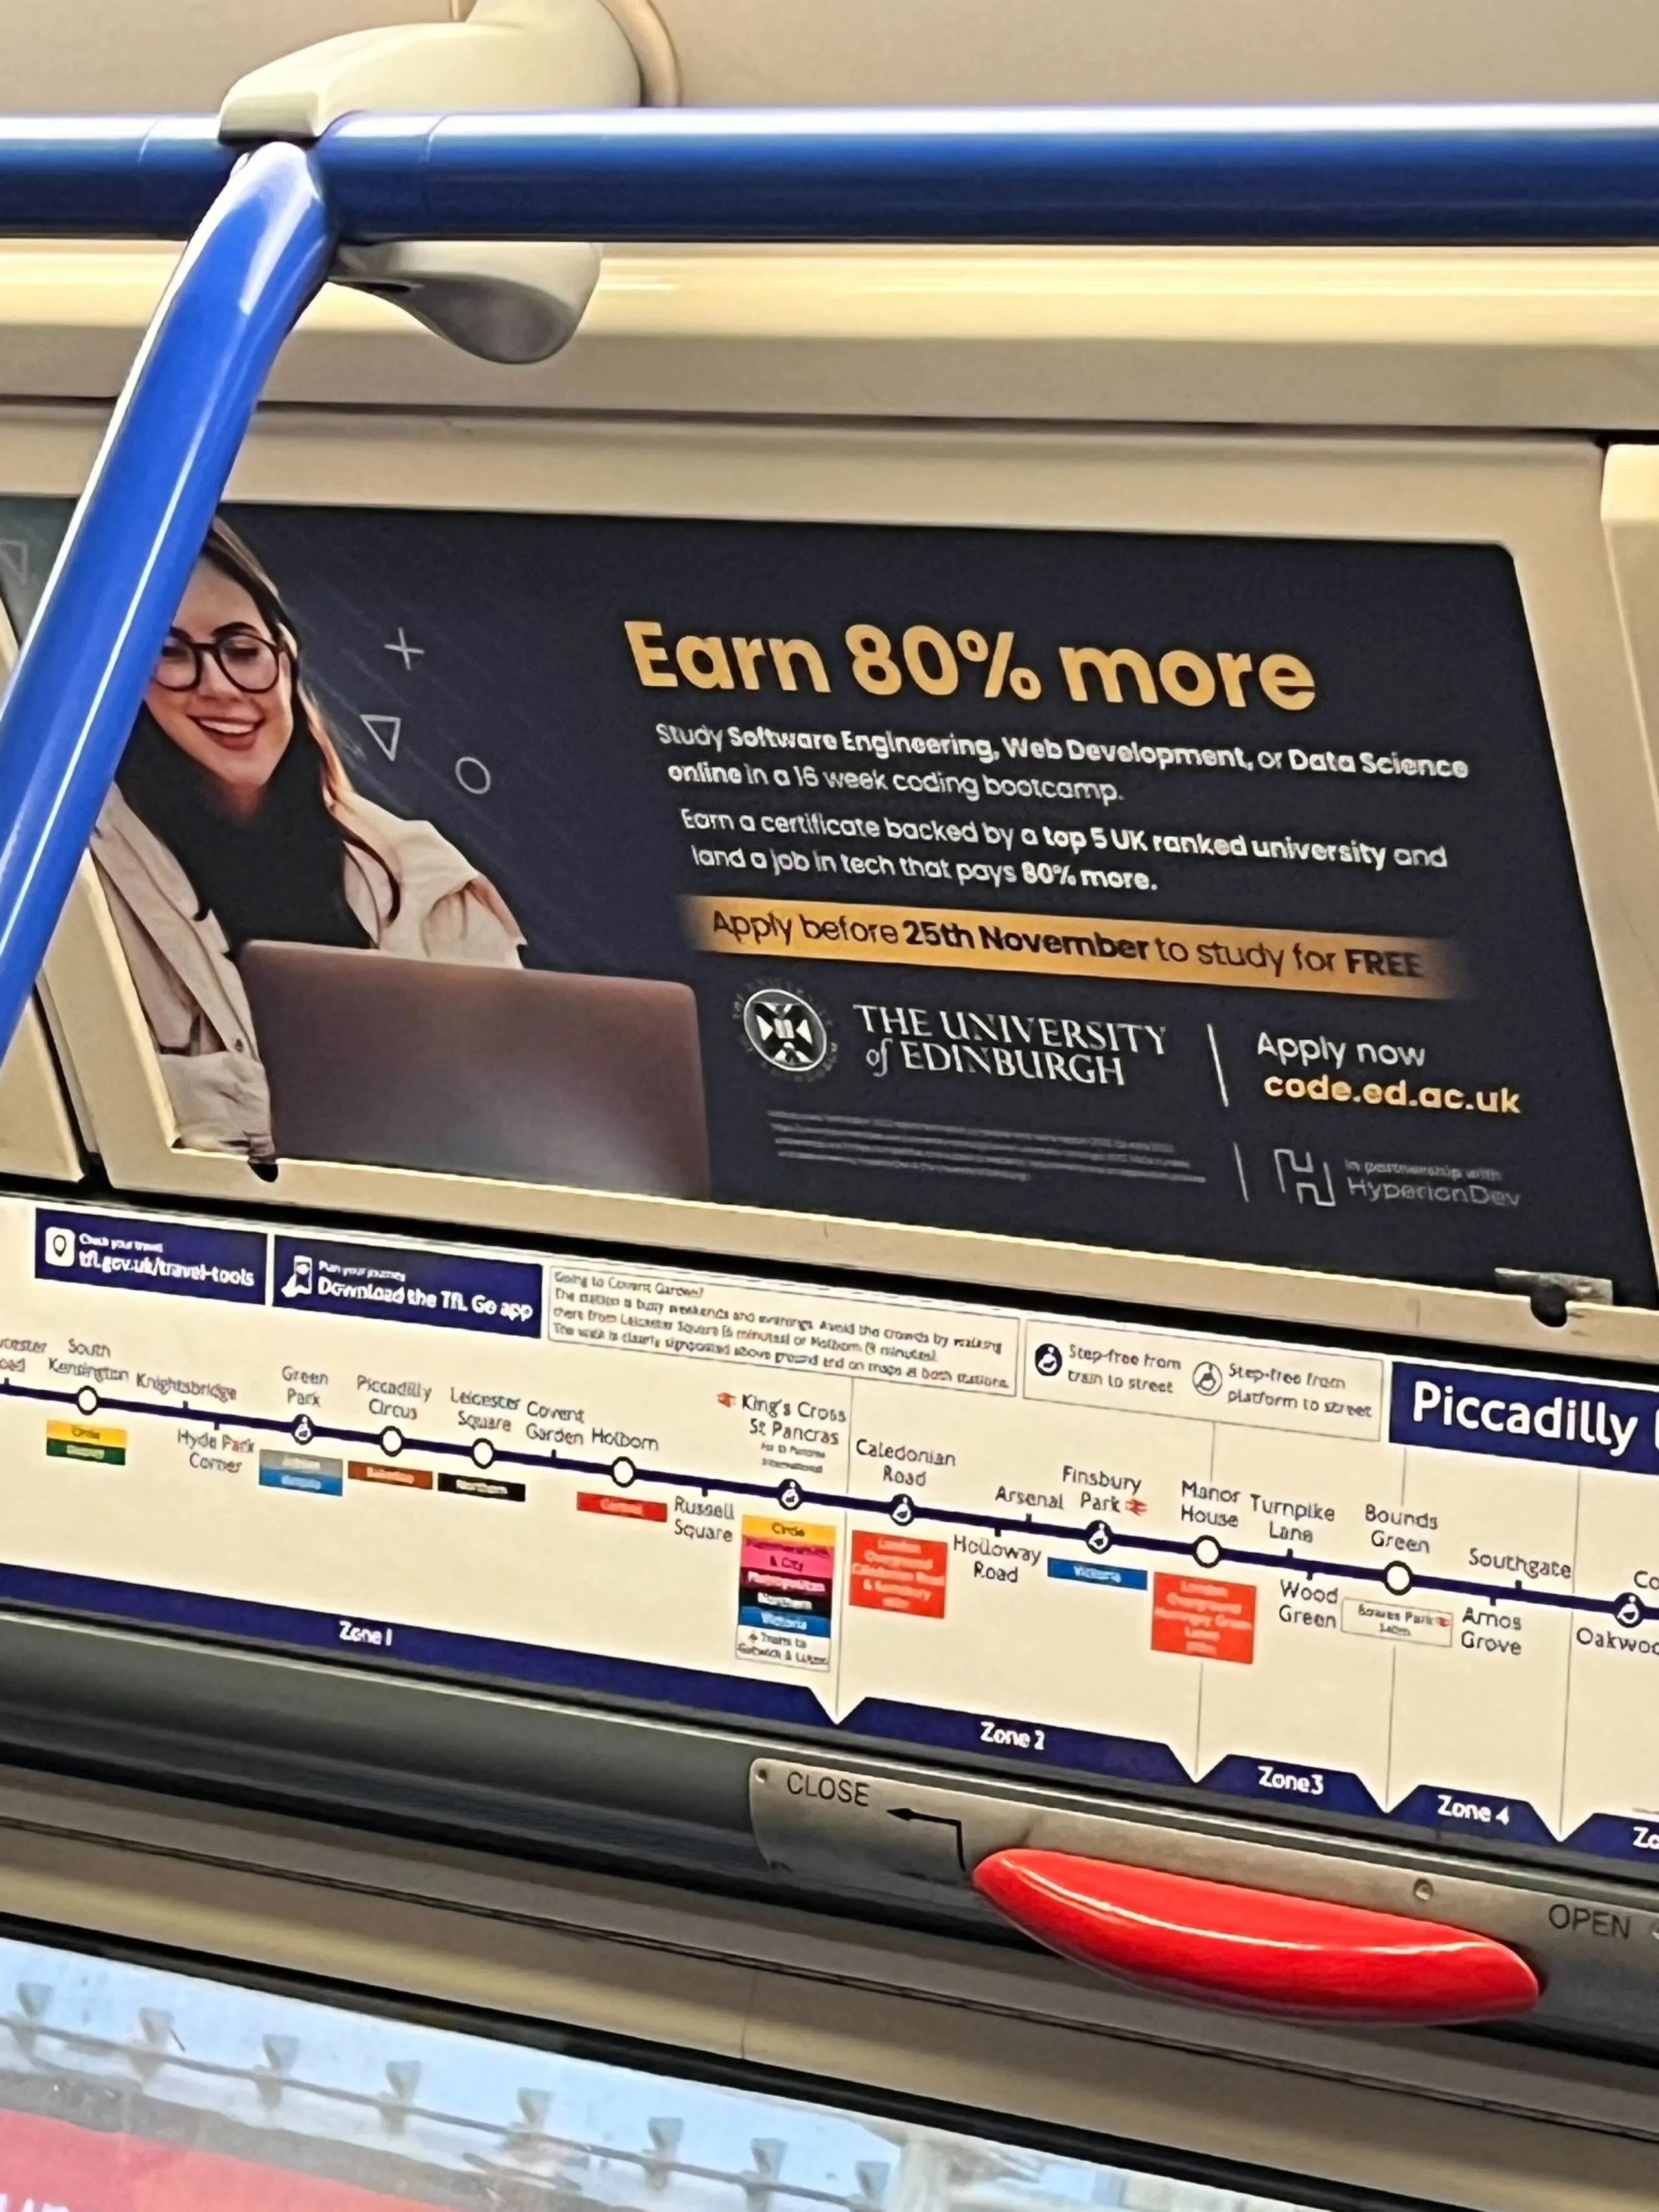 Tube poster advert for the University of
Edinburgh